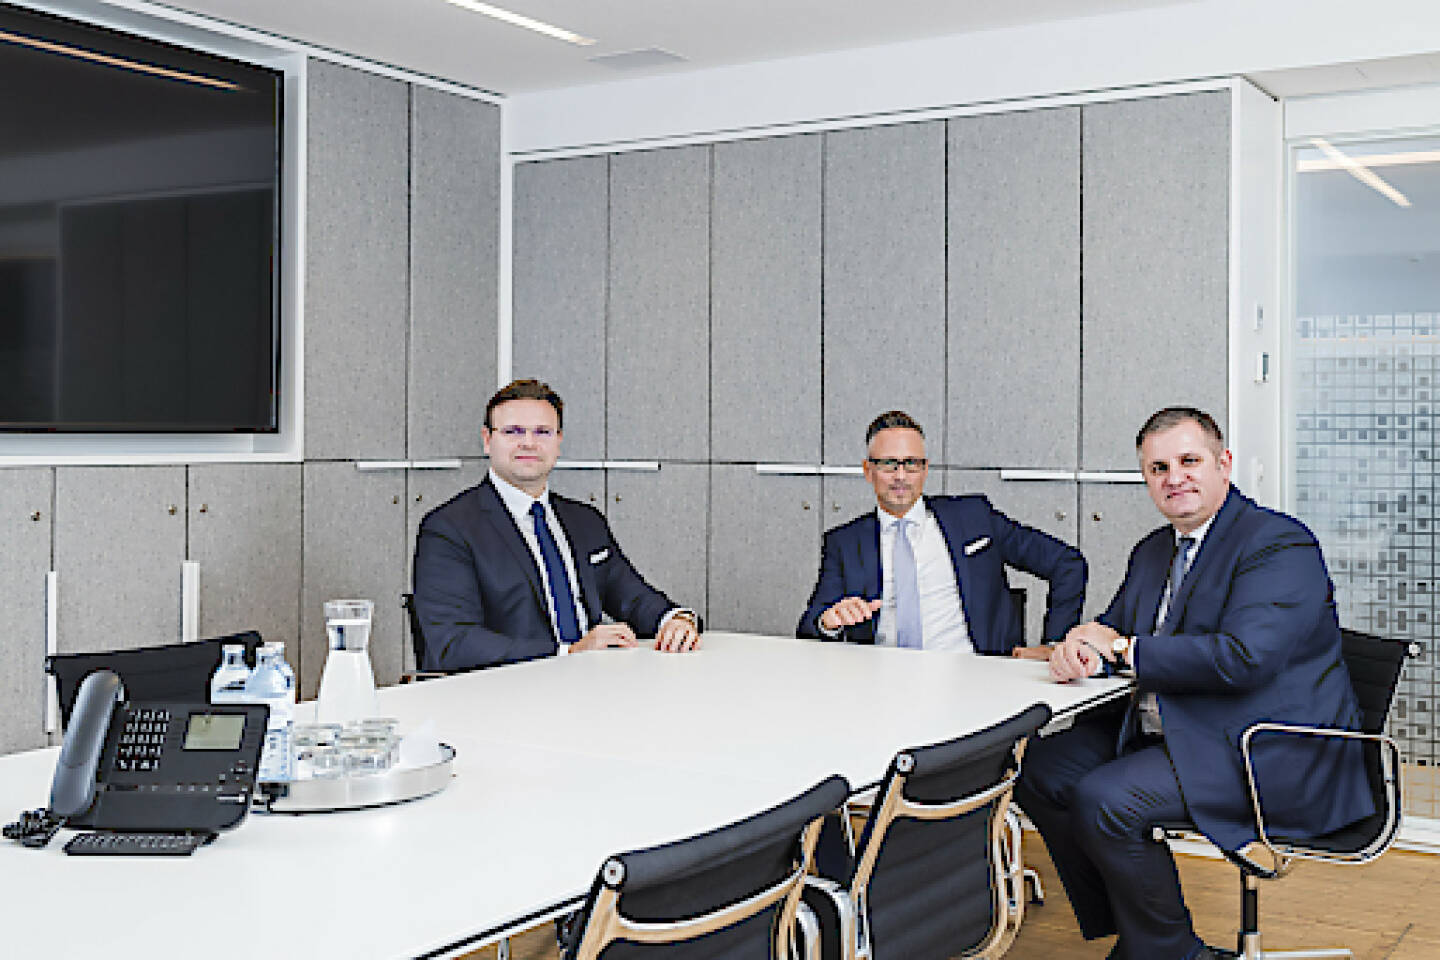  Der neue Wiener Privatbank-Vorstand v.l.n.r: Juraj Dvorak, Christoph Raninger (CEO), Eduard Berger, Credit: Wiener Privatbank